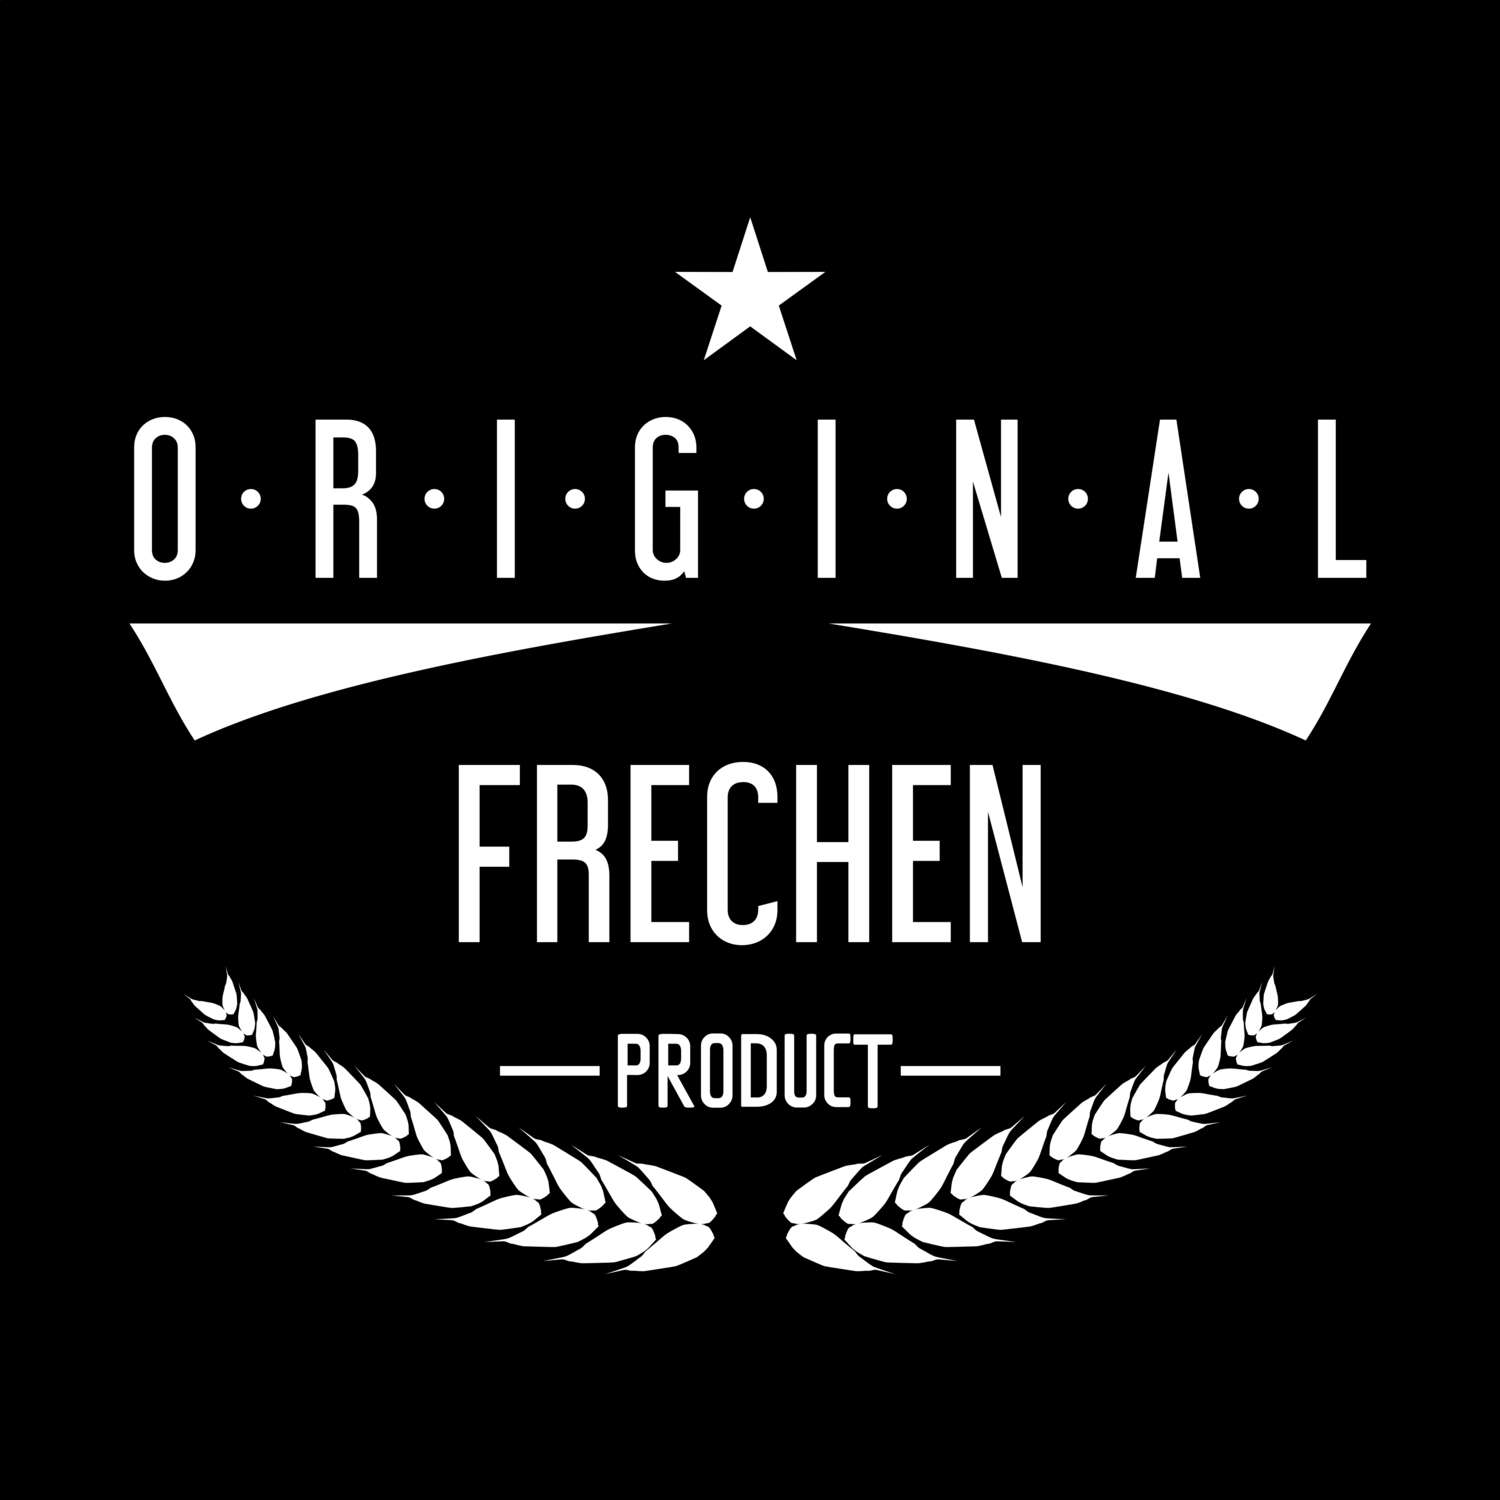 Frechen T-Shirt »Original Product«